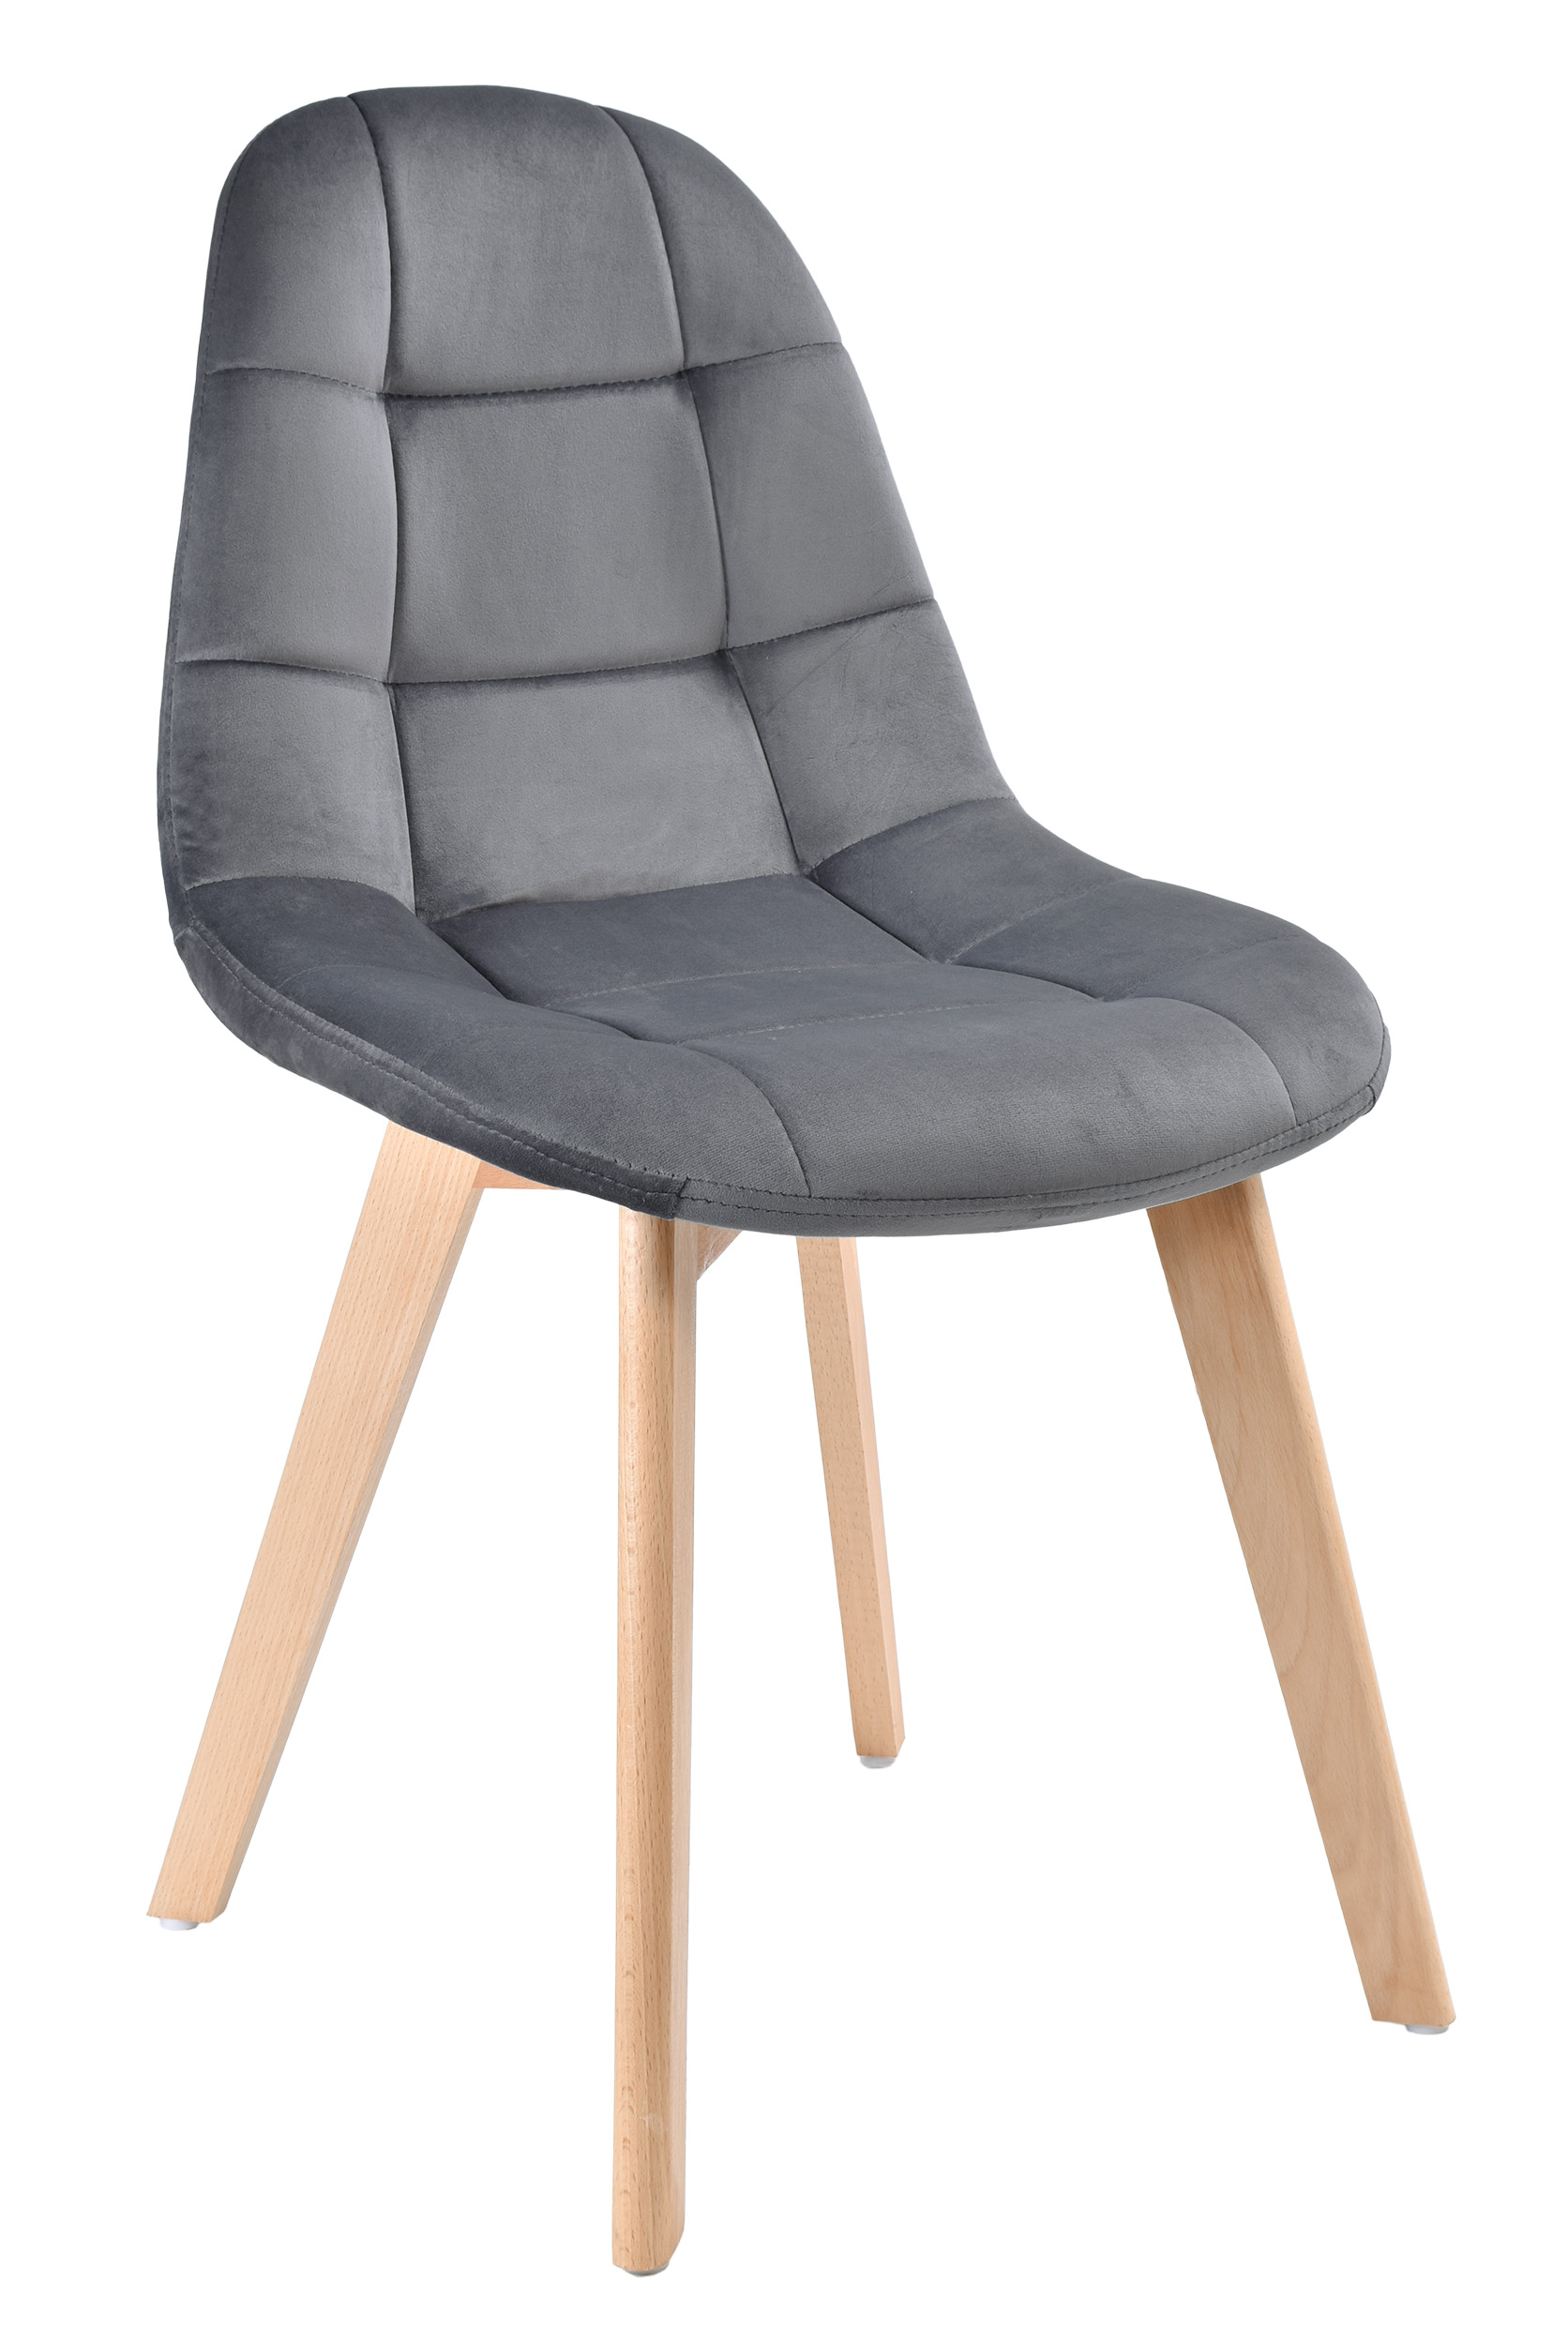 krzeslo nowoczesne tapicerowane velvet austin